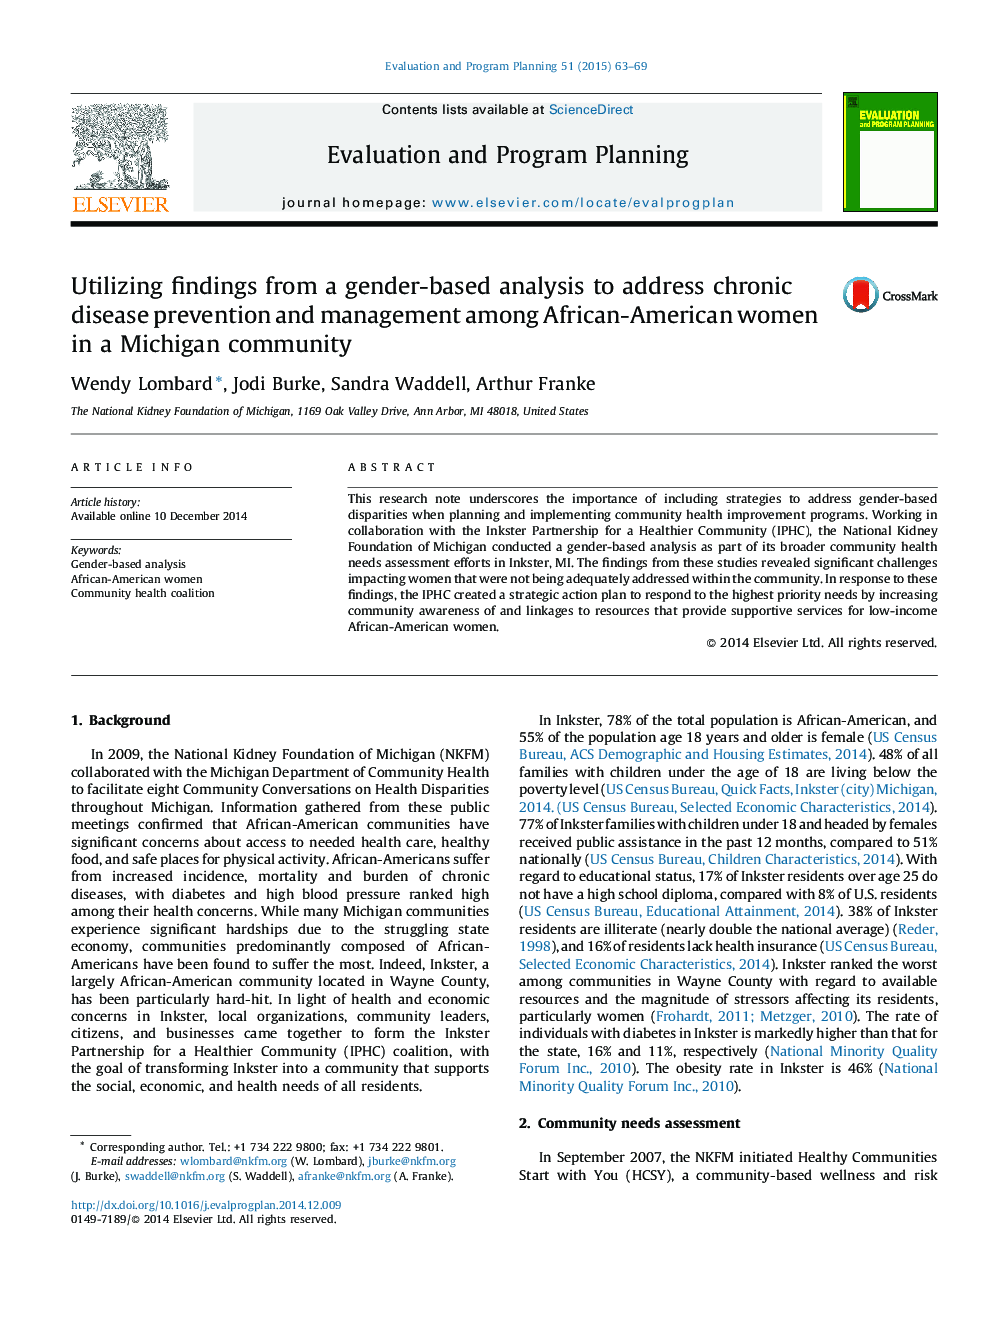 استفاده از یافته های تجزیه و تحلیل مبتنی بر جنسیت برای رسیدگی به پیشگیری از بیماری های مزمن و مدیریت در میان زنان آمریکایی آفریقایی تبار در جامعه میشیگان